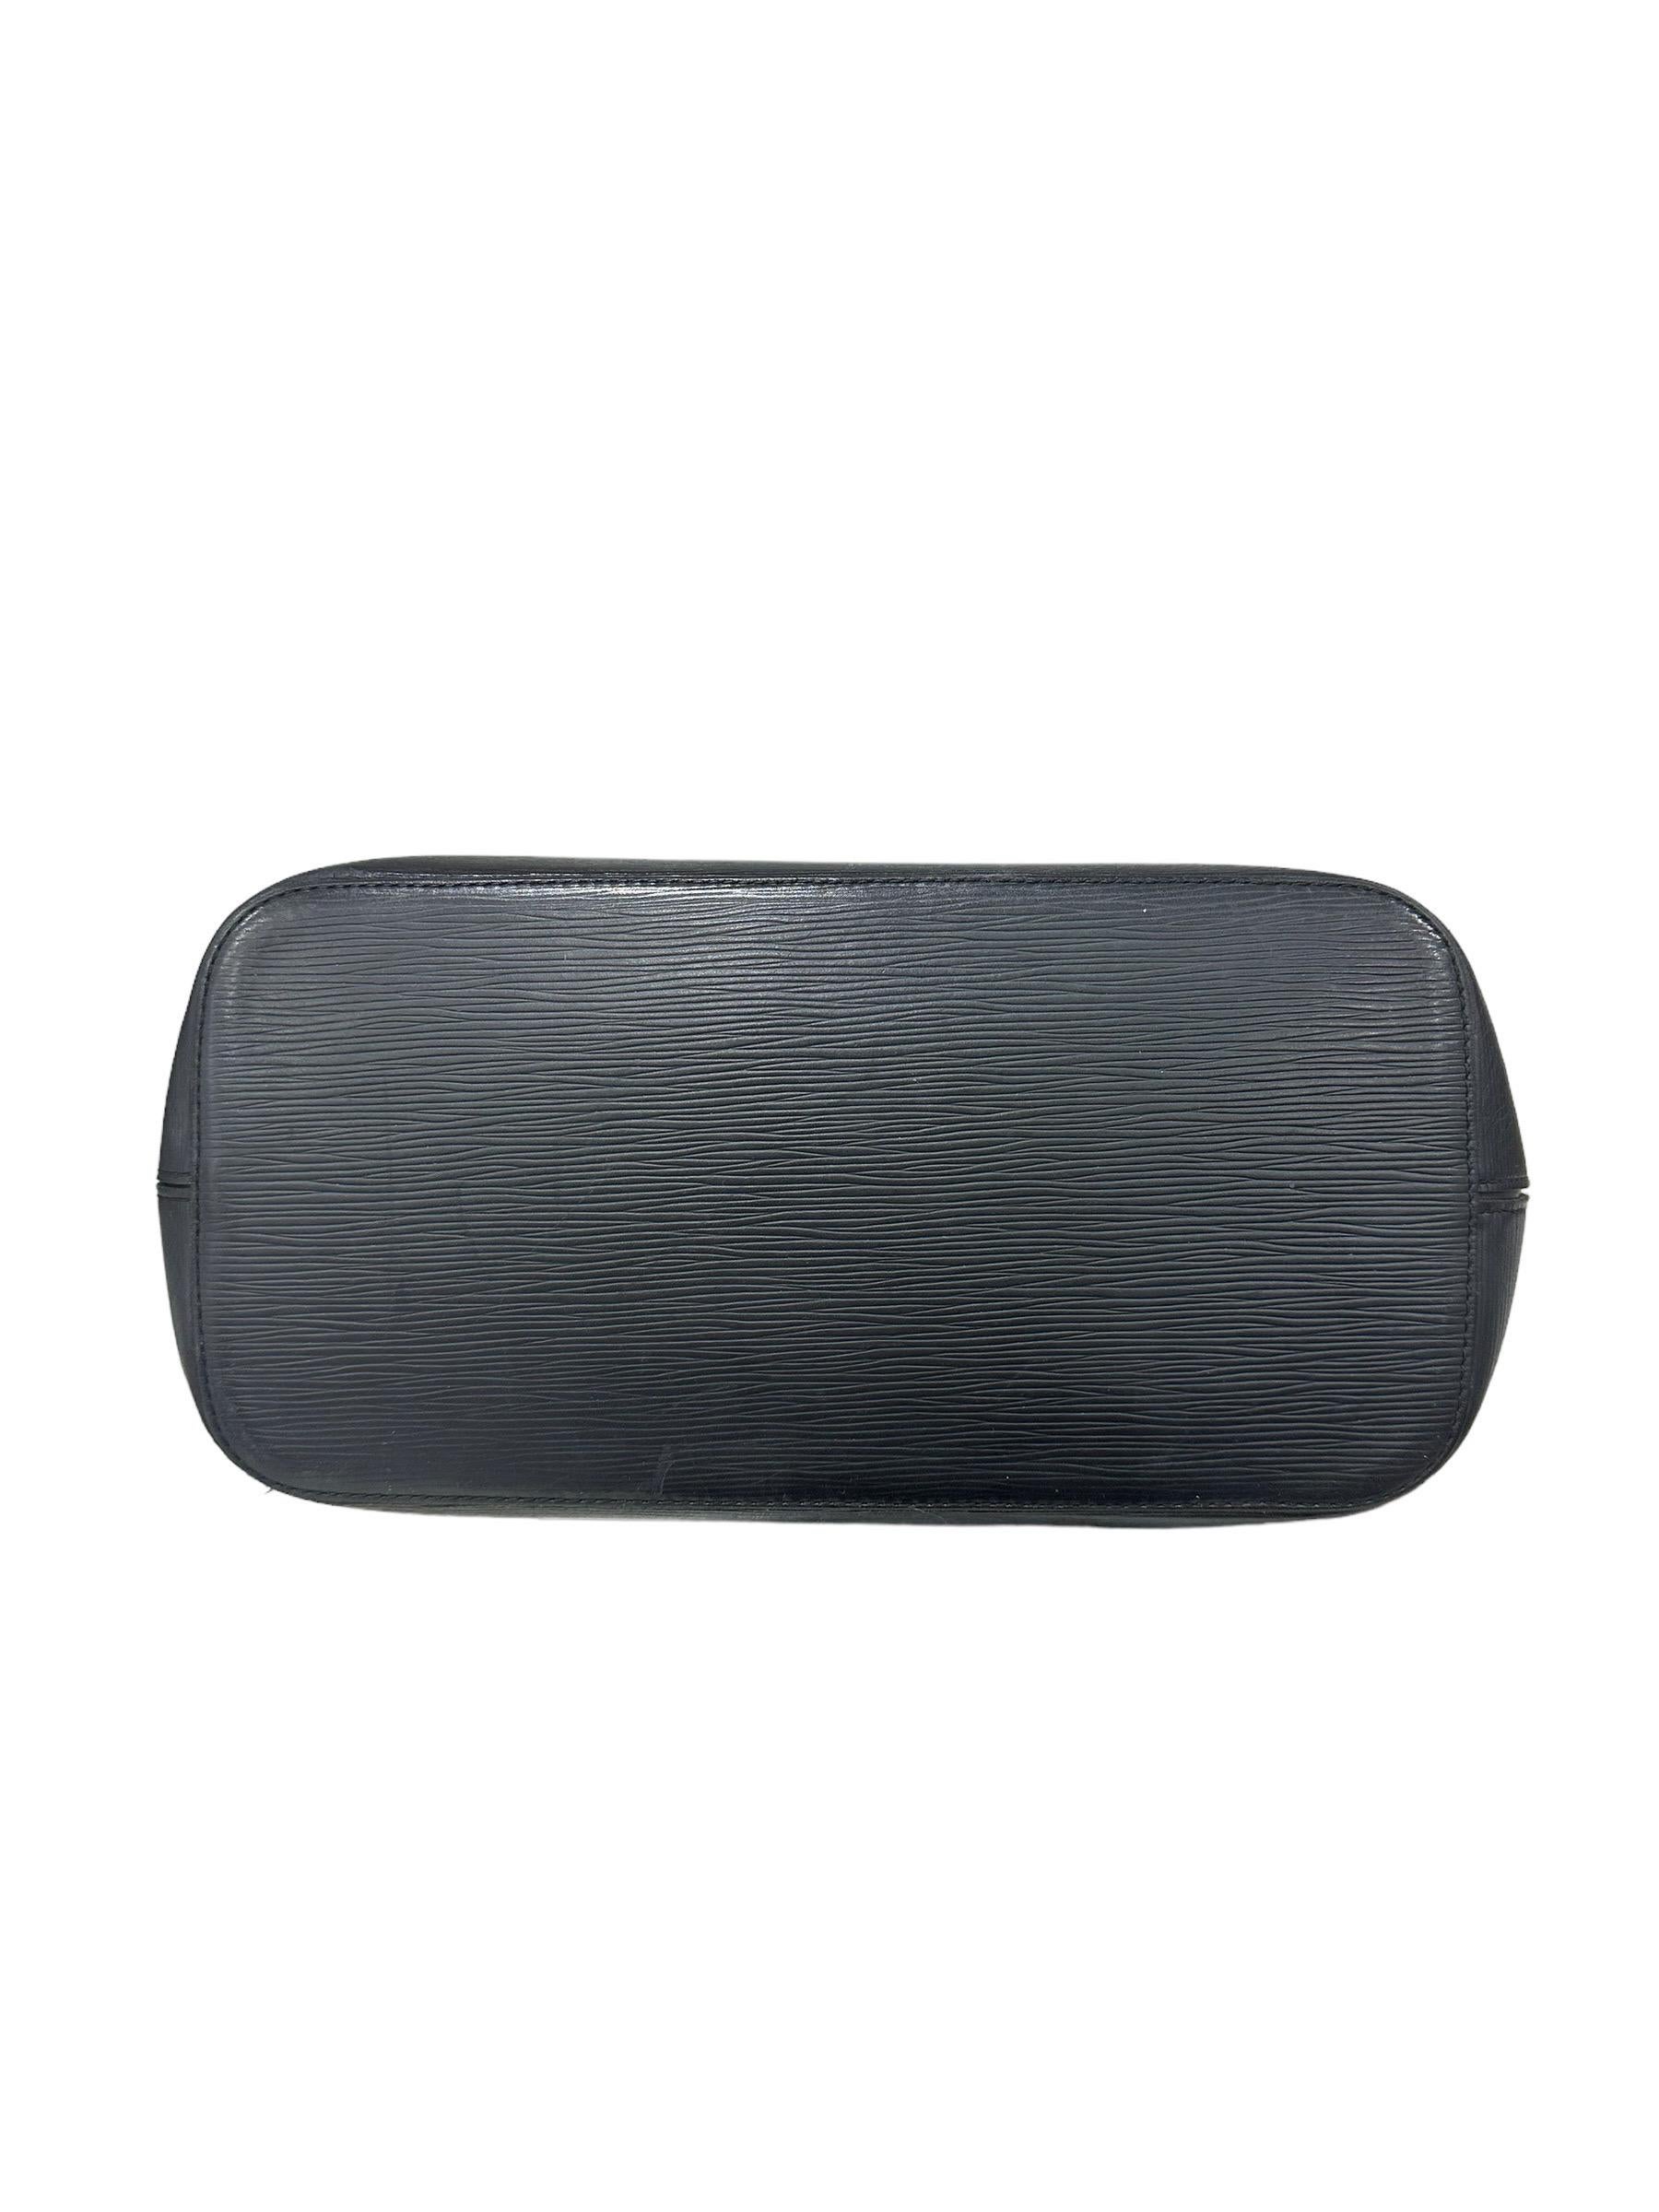 Louis Vuitton Neverfull MM Black Epi Leather Shoulder Bag 6